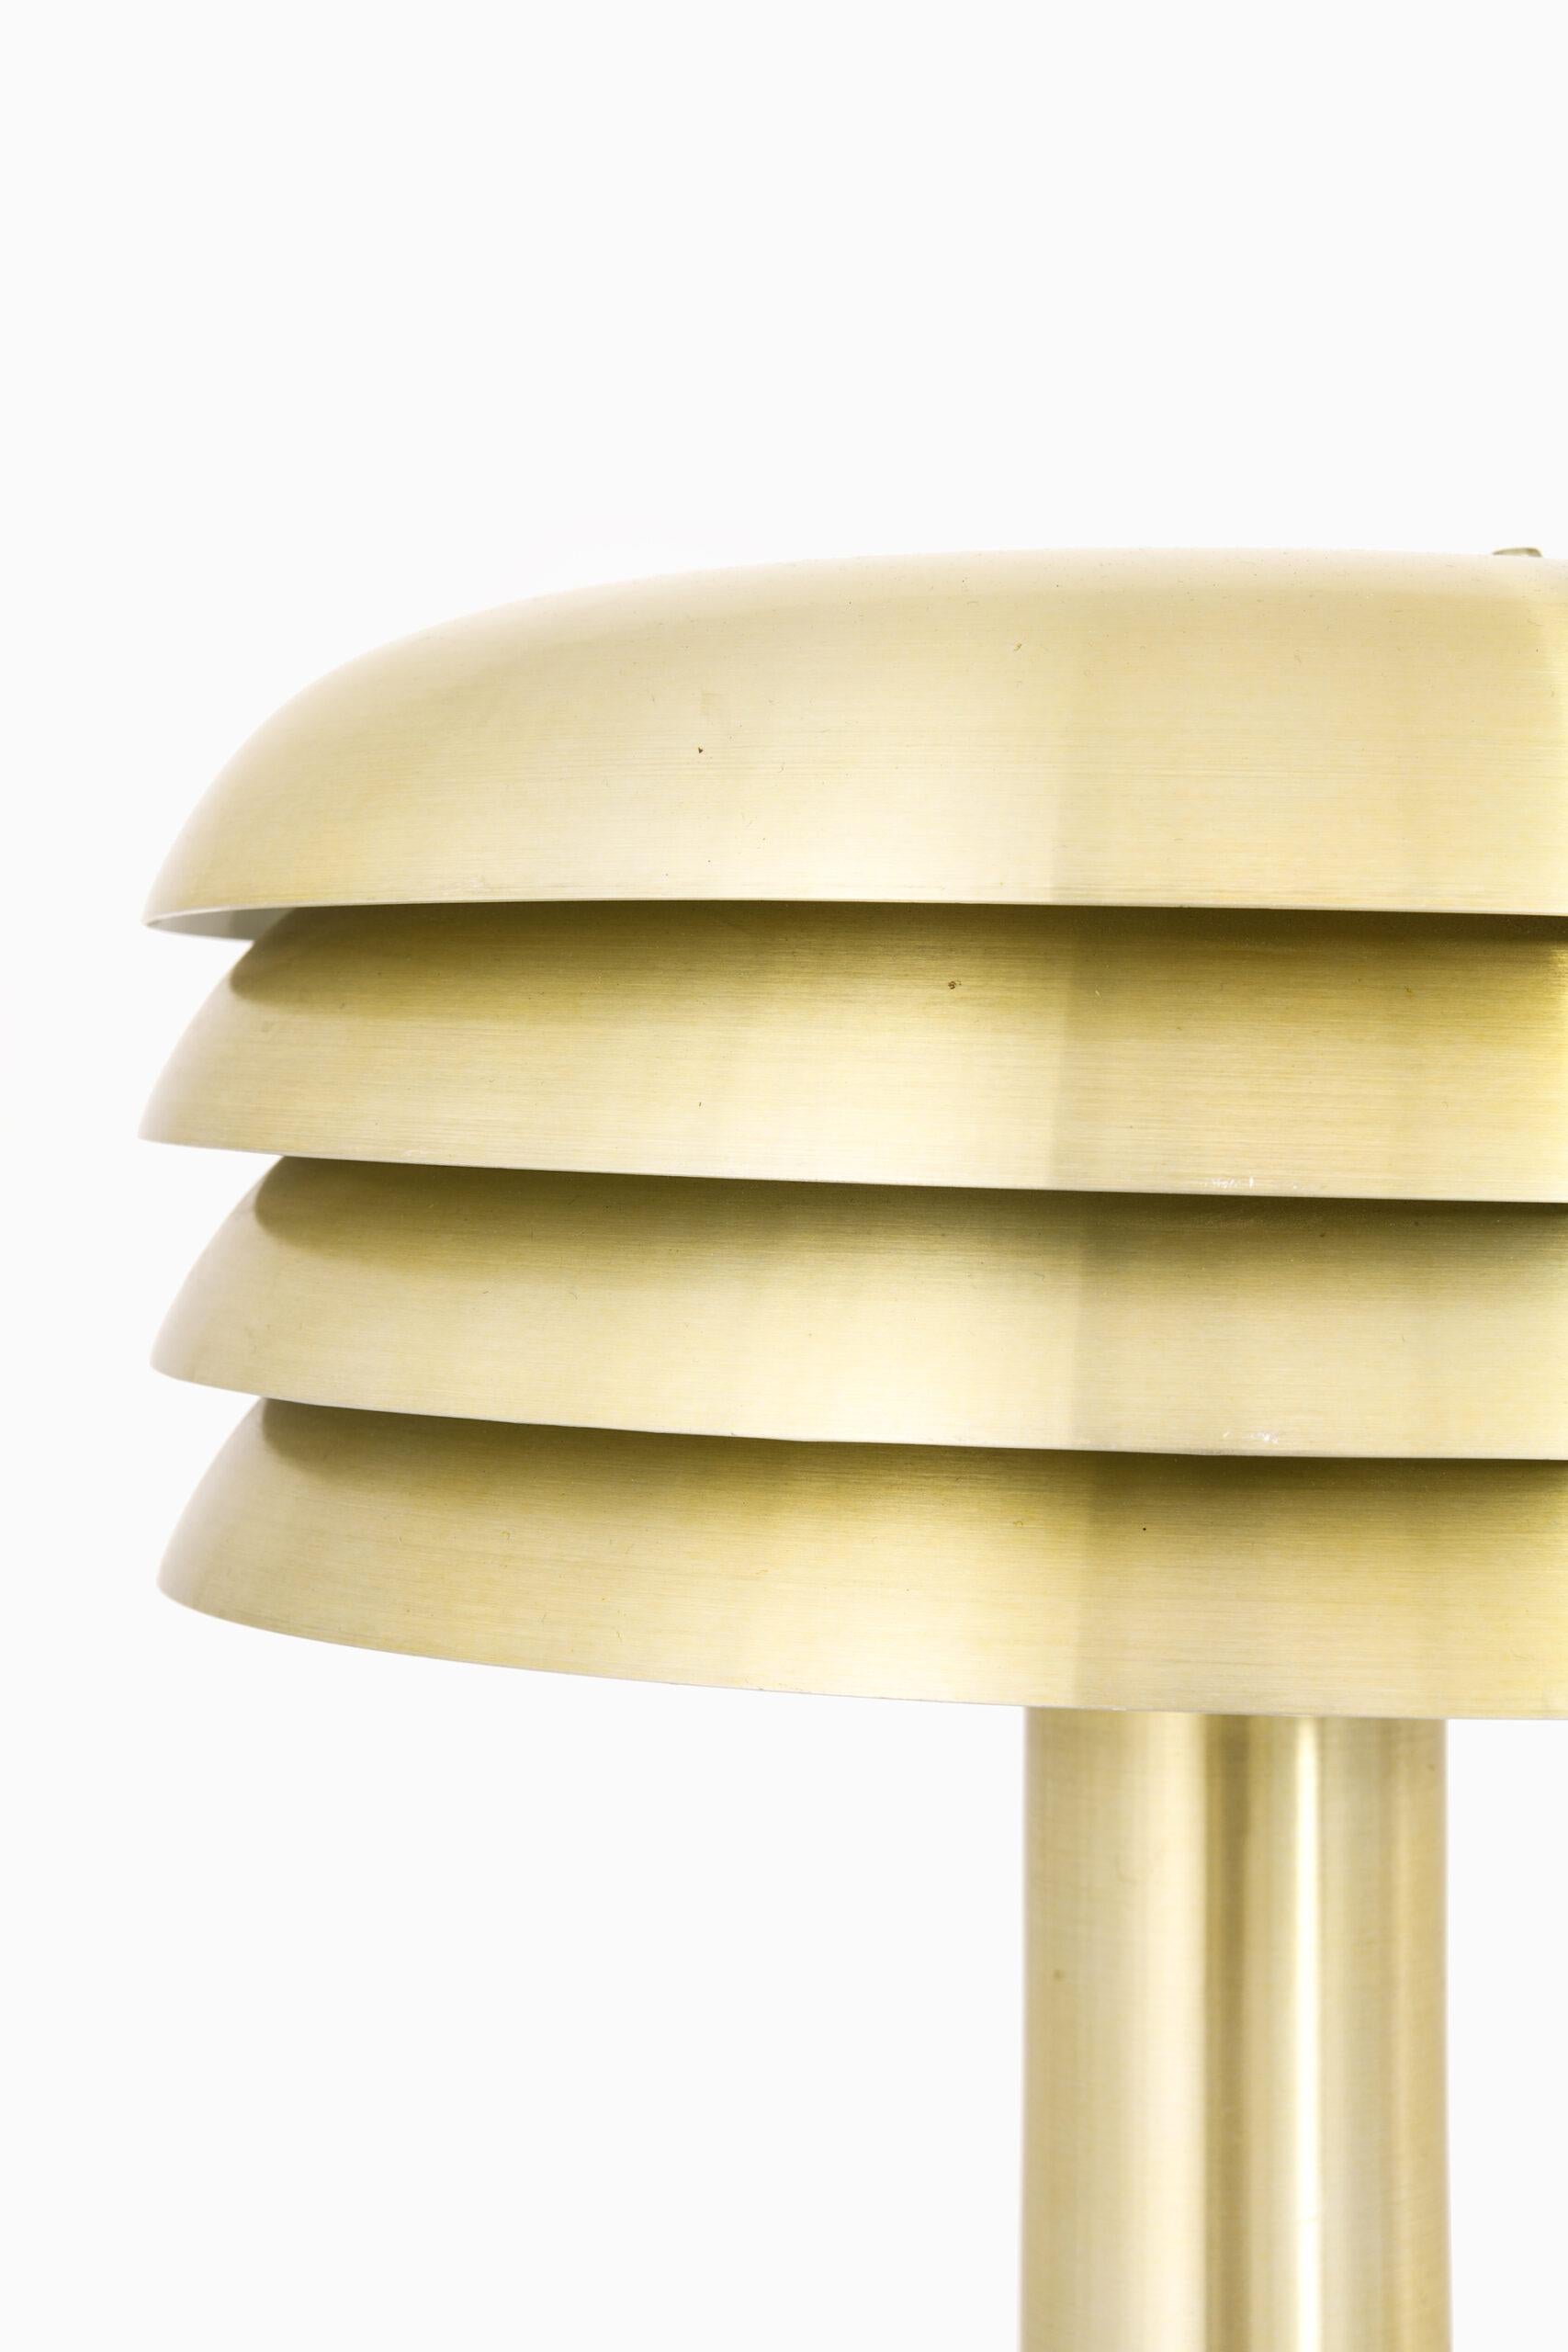 Lampe de table modèle BN-26 conçue par Hans-Agne Jakobsson. Produit par Hans-Agne Jakobsson AB à Markaryd, Suède.